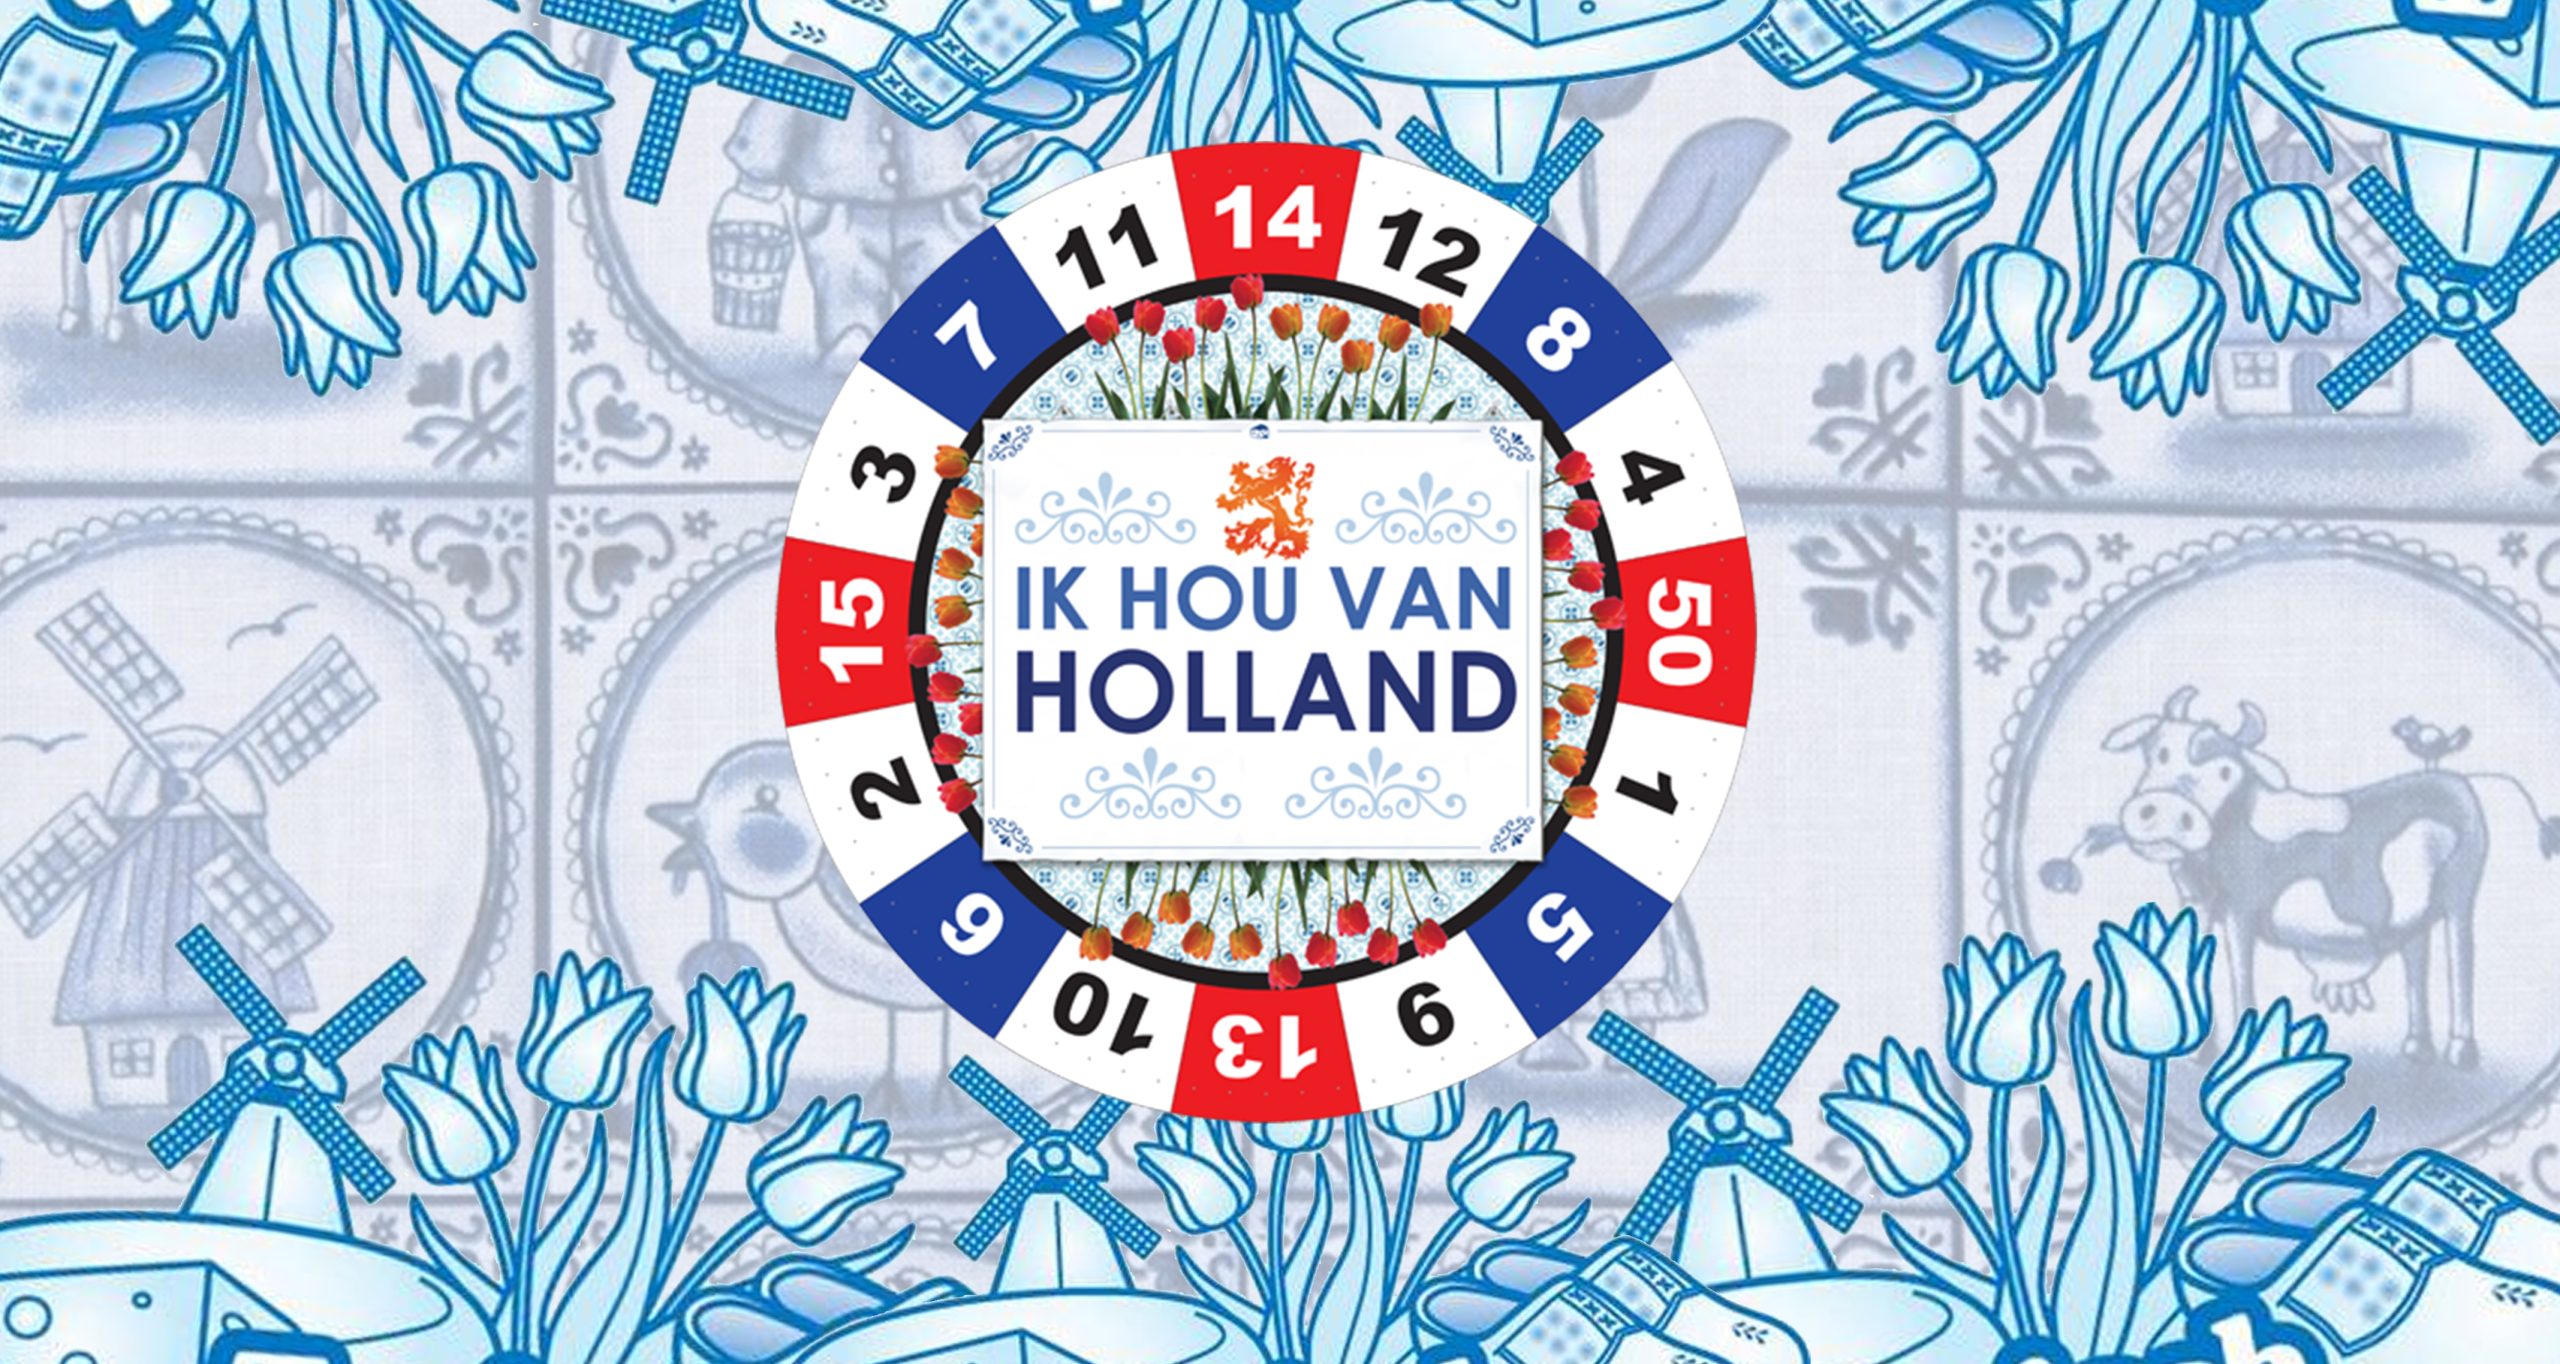 Personeelsuitje Leiden: Ik Hou Van Holland in de stad